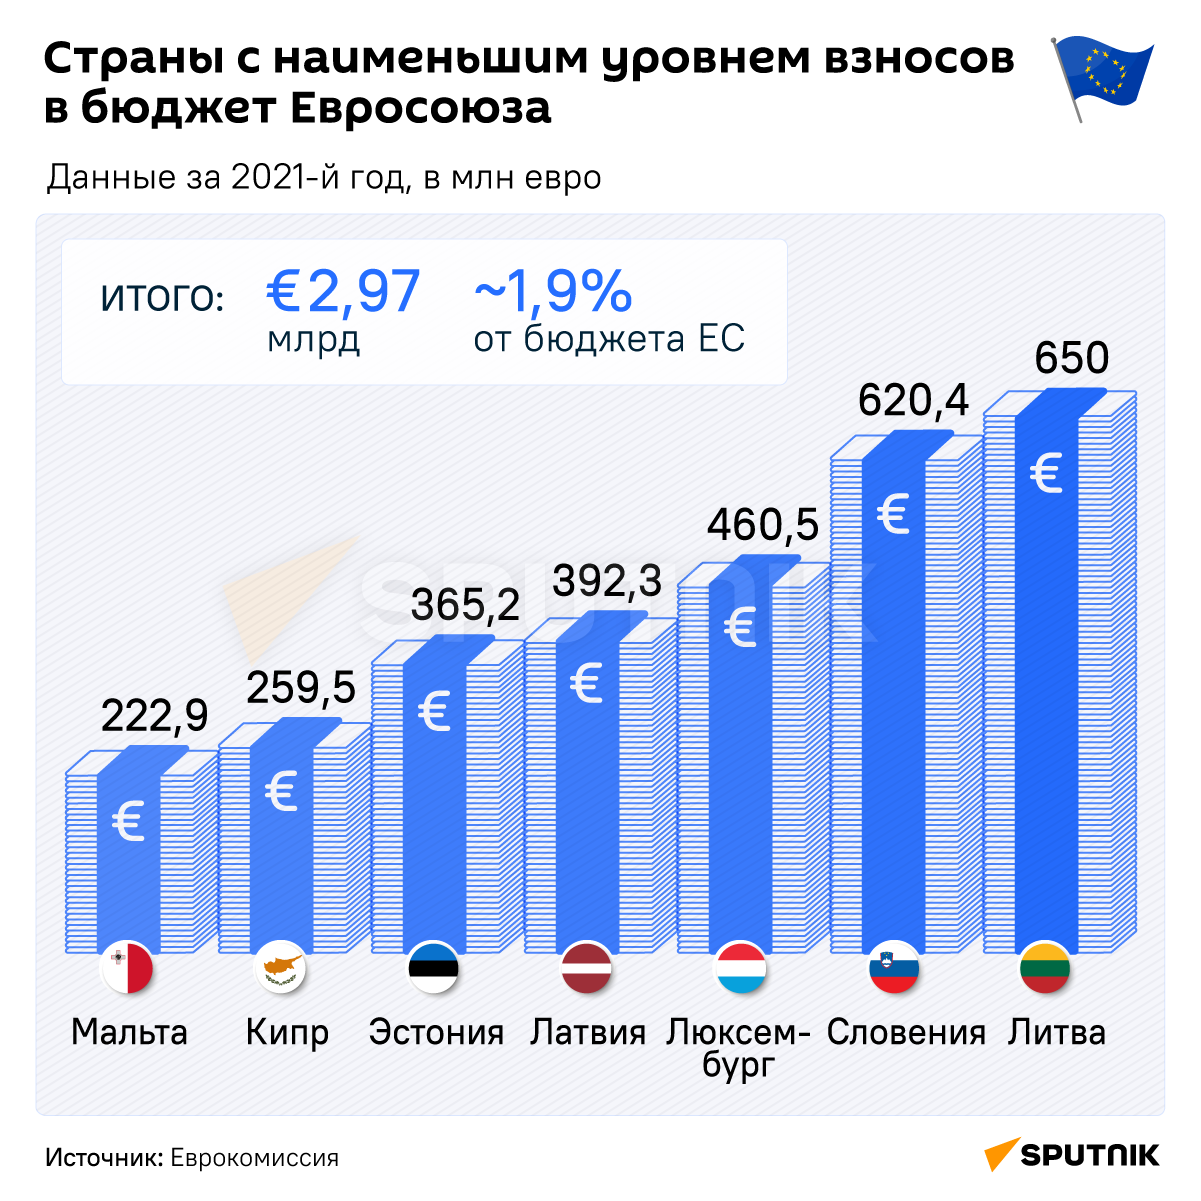 Страны с наименьшим уровнем взносов в бюджет Евросоюза инфографика - Sputnik Узбекистан